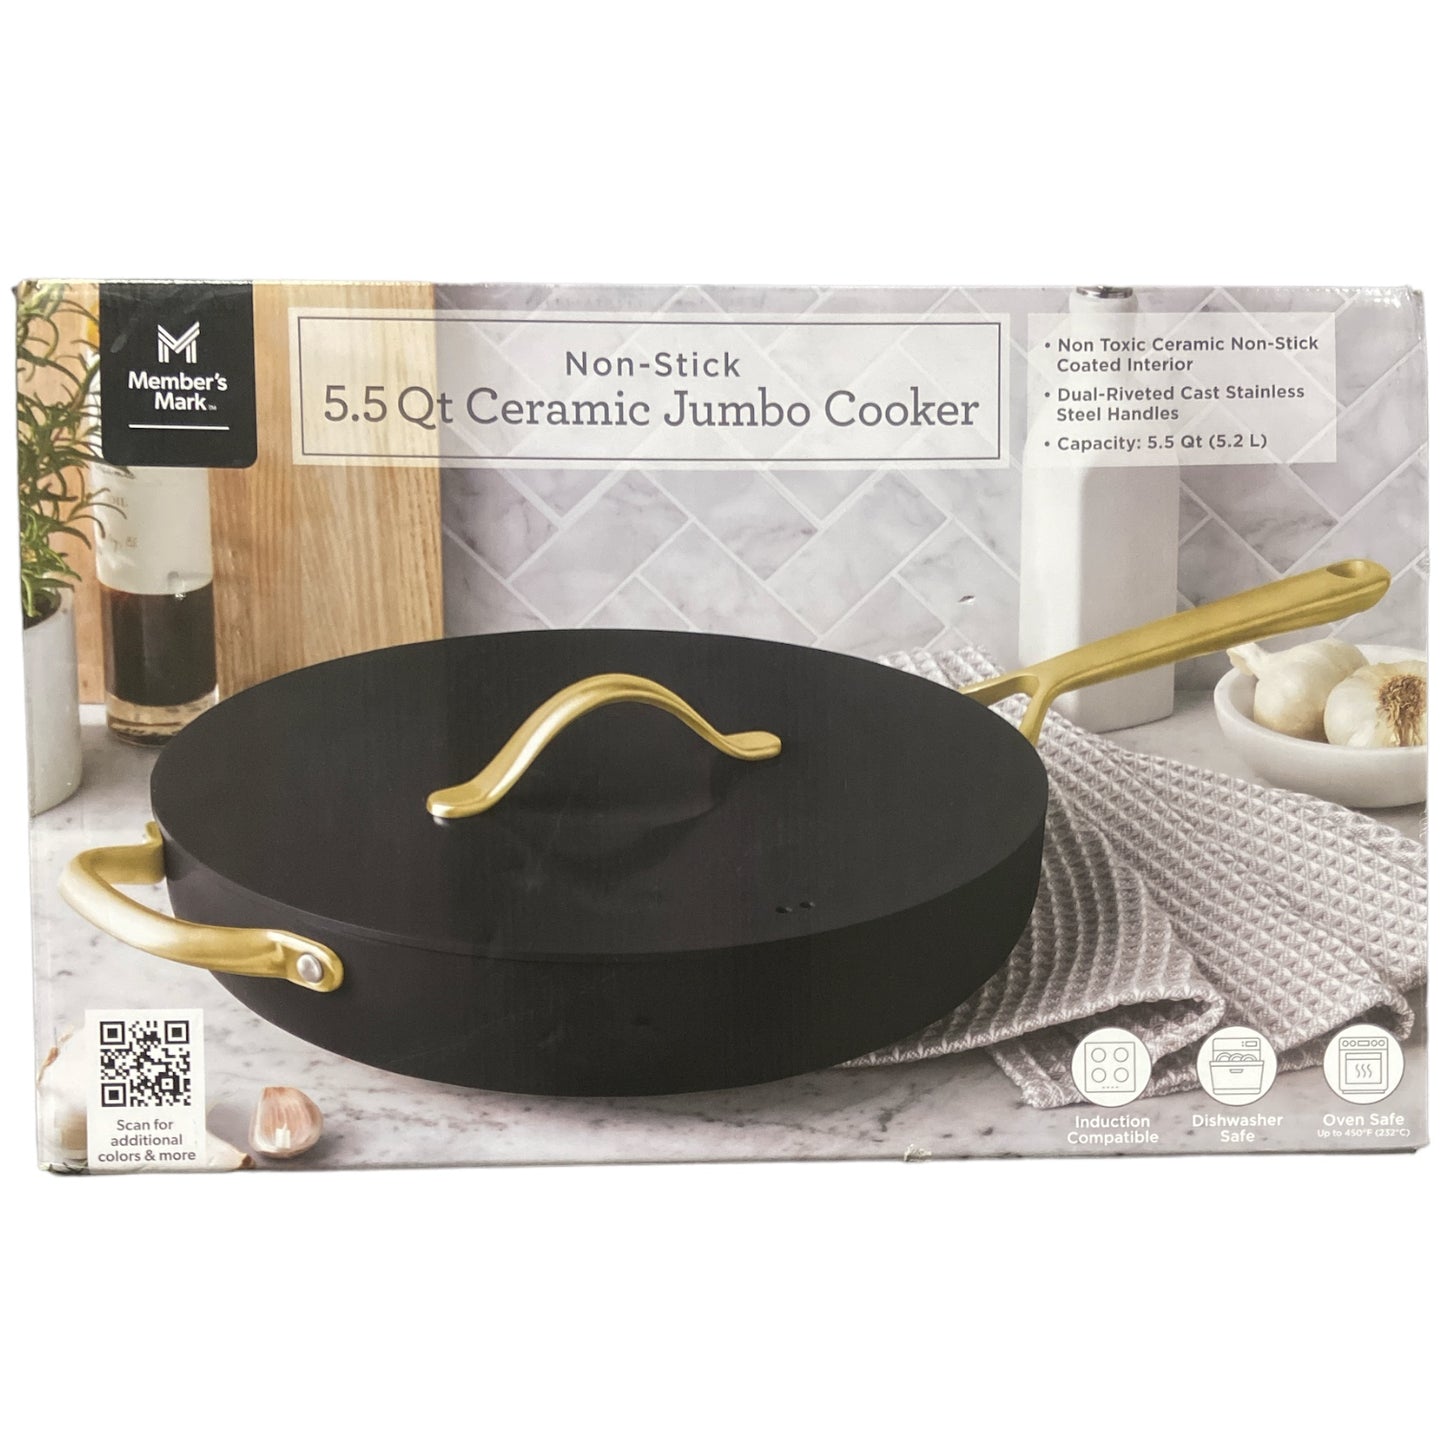 Member's Mark 5.5-Quart Non-Stick Ceramic Jumbo Cooker, Black, with Gold Handles